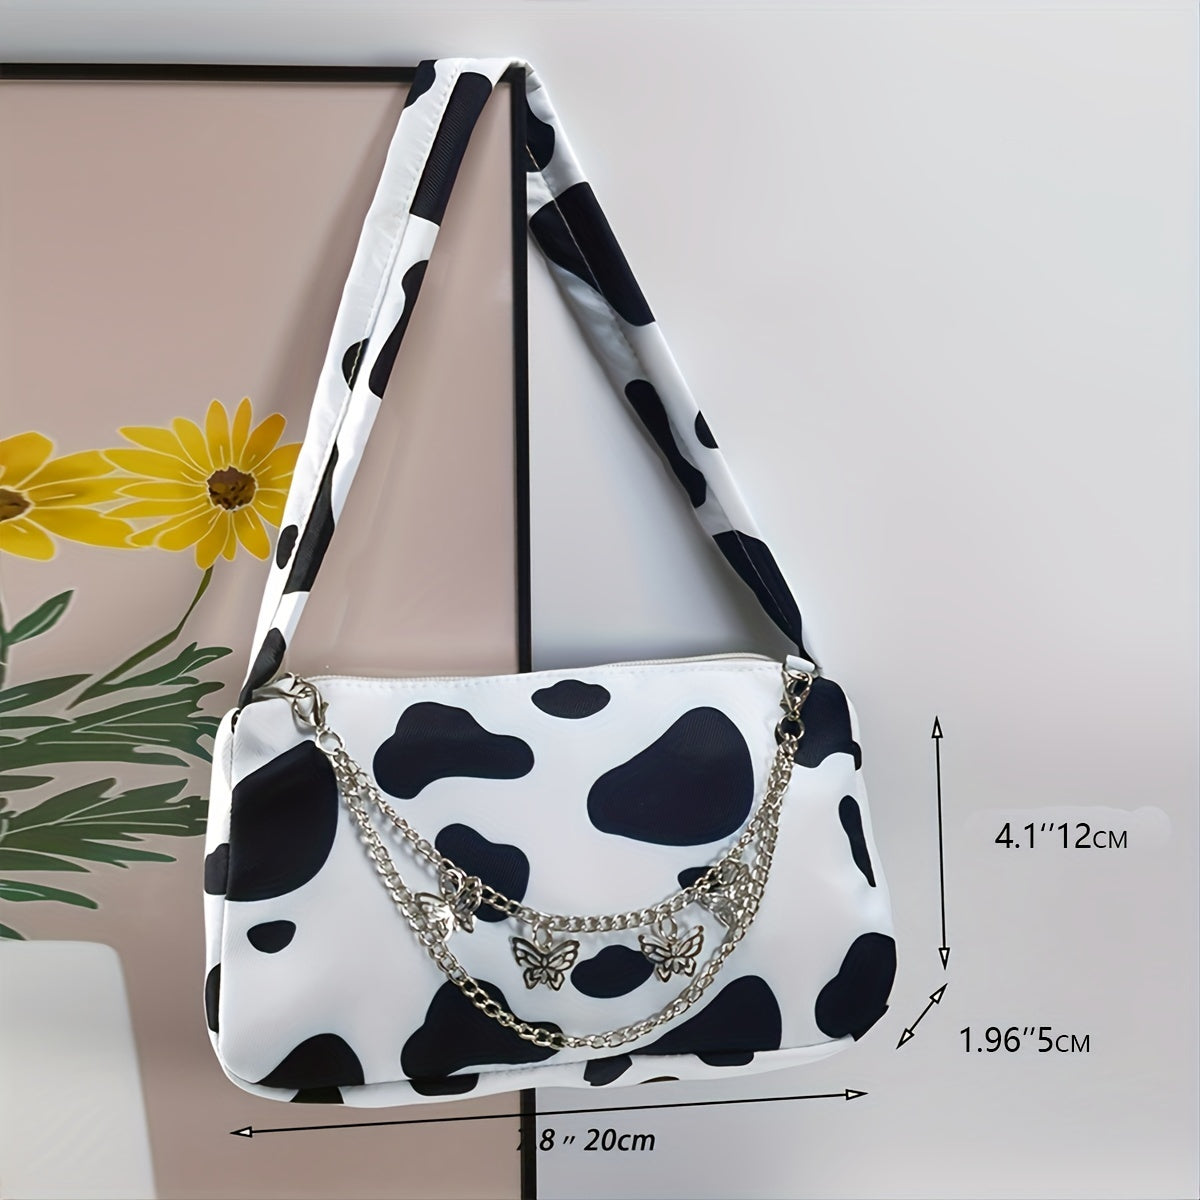 Cow Print Shoulder Bag - Elegant Zipper Fashion Chain Decor Baguette Bag